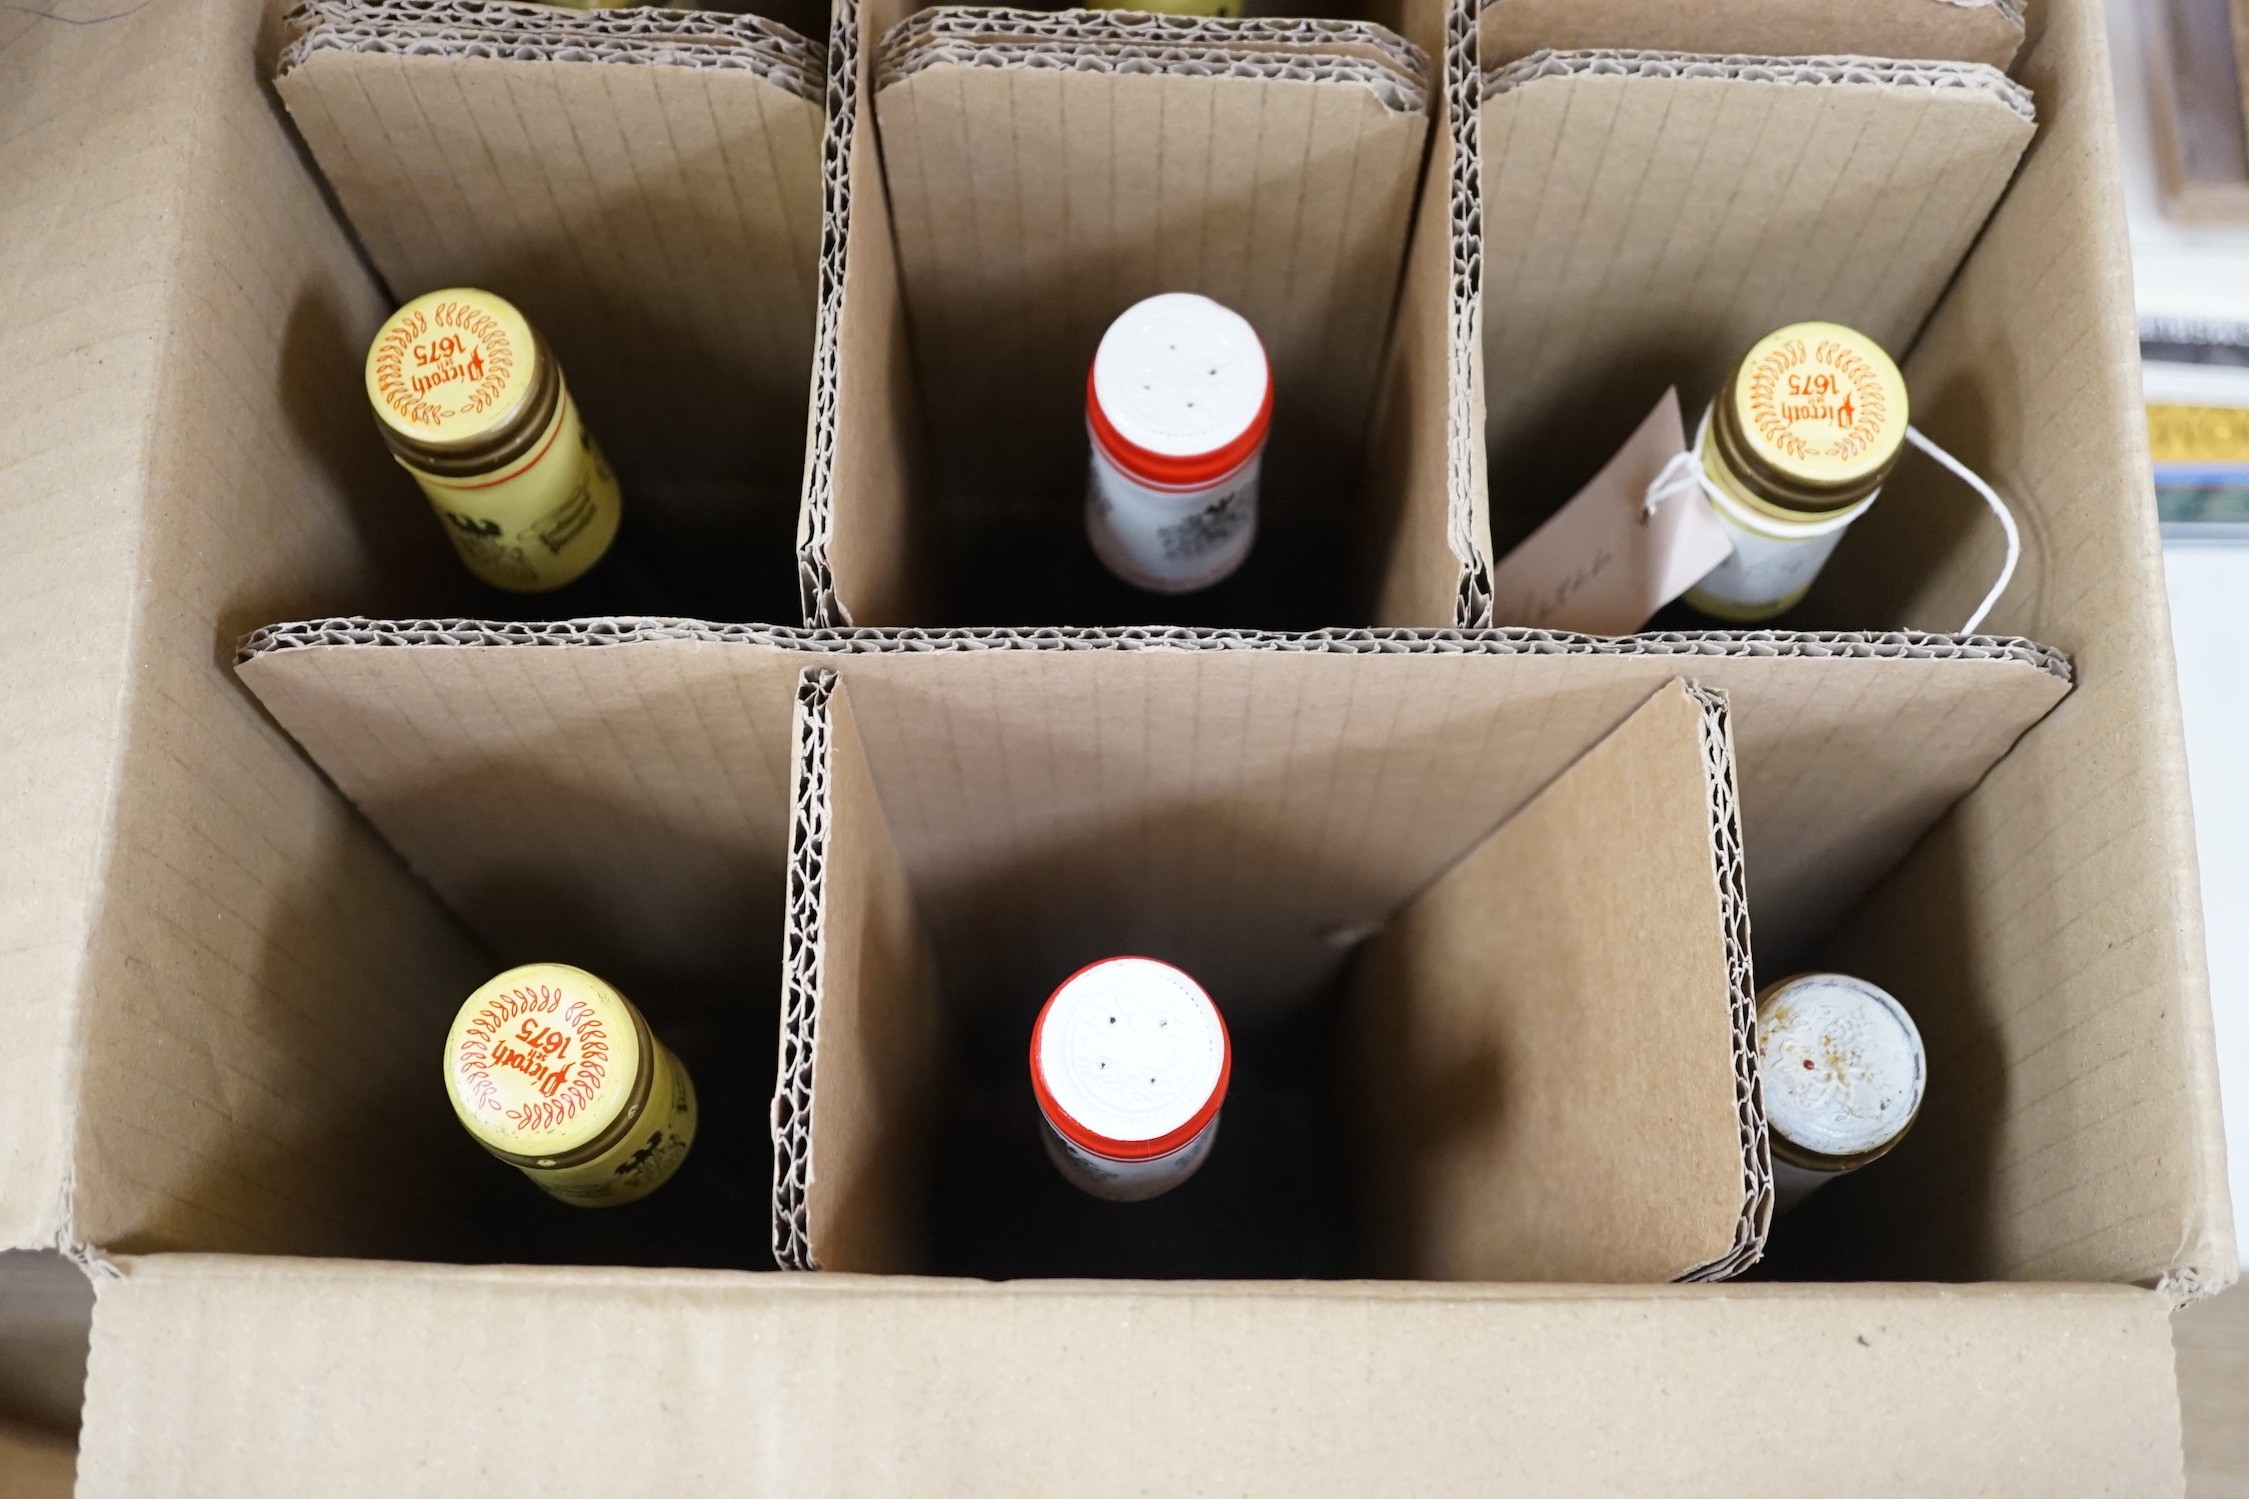 Twelve assorted German wines